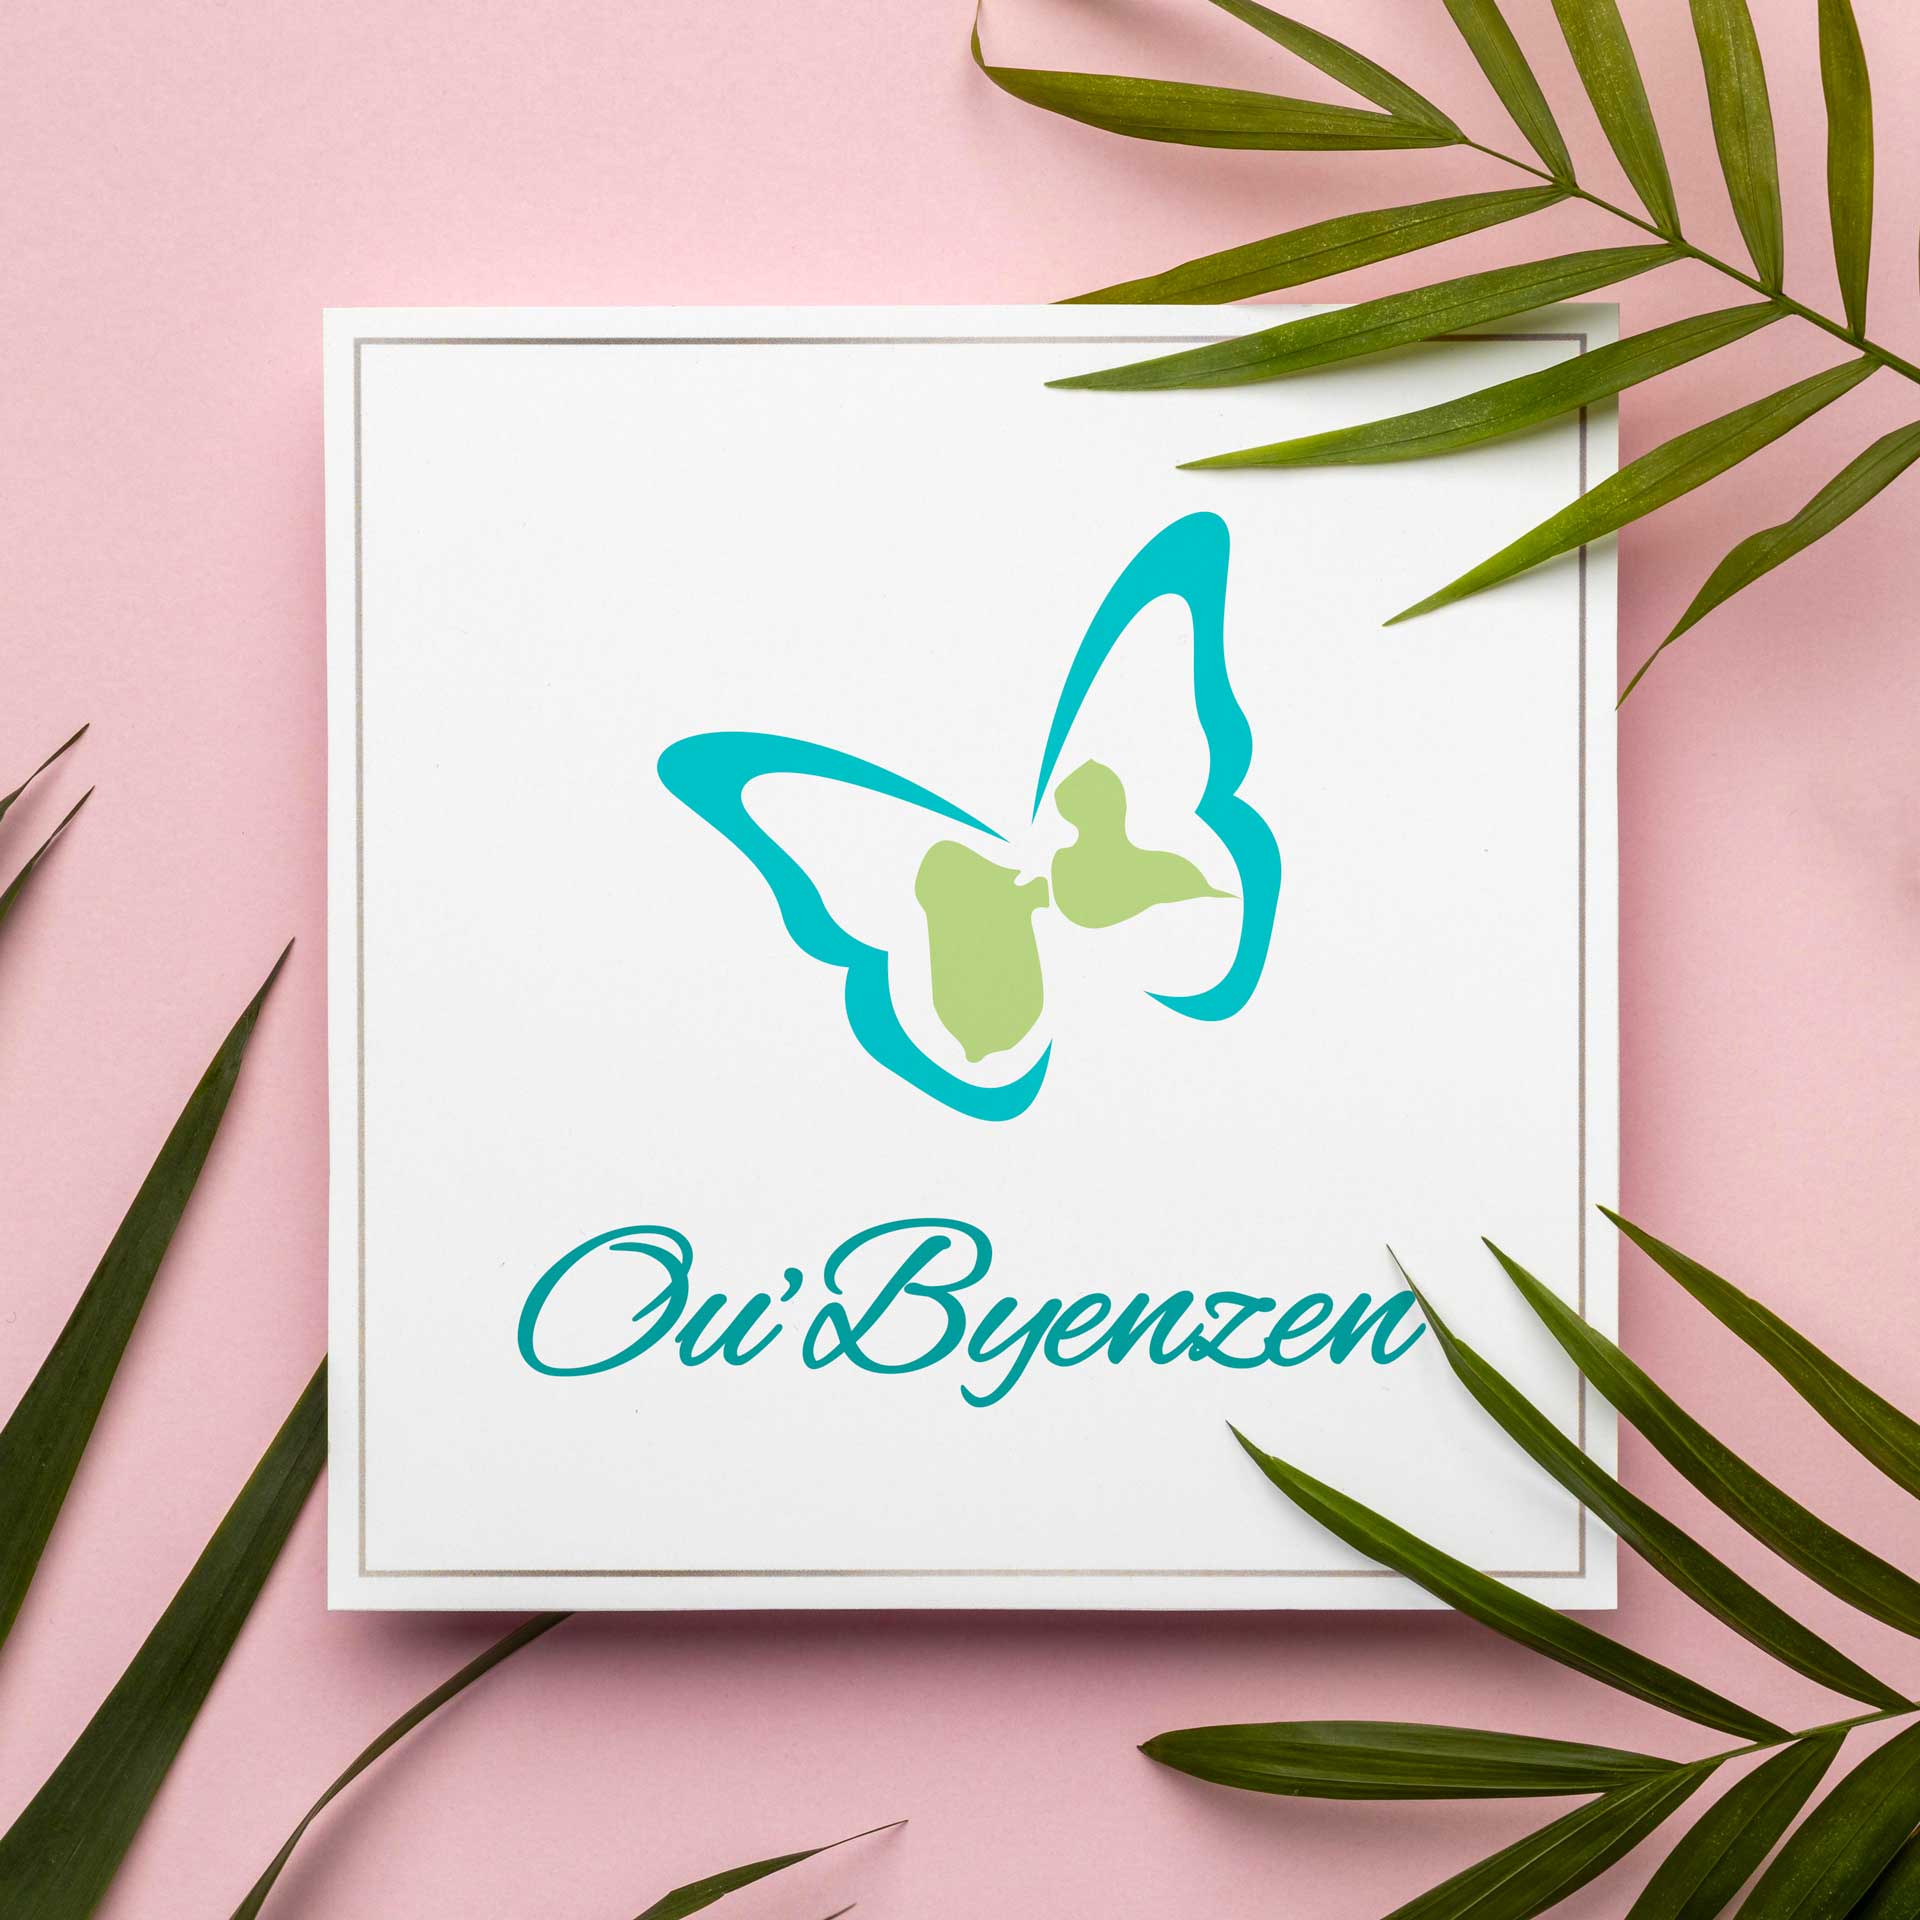 Logotype Ou'Byenzen